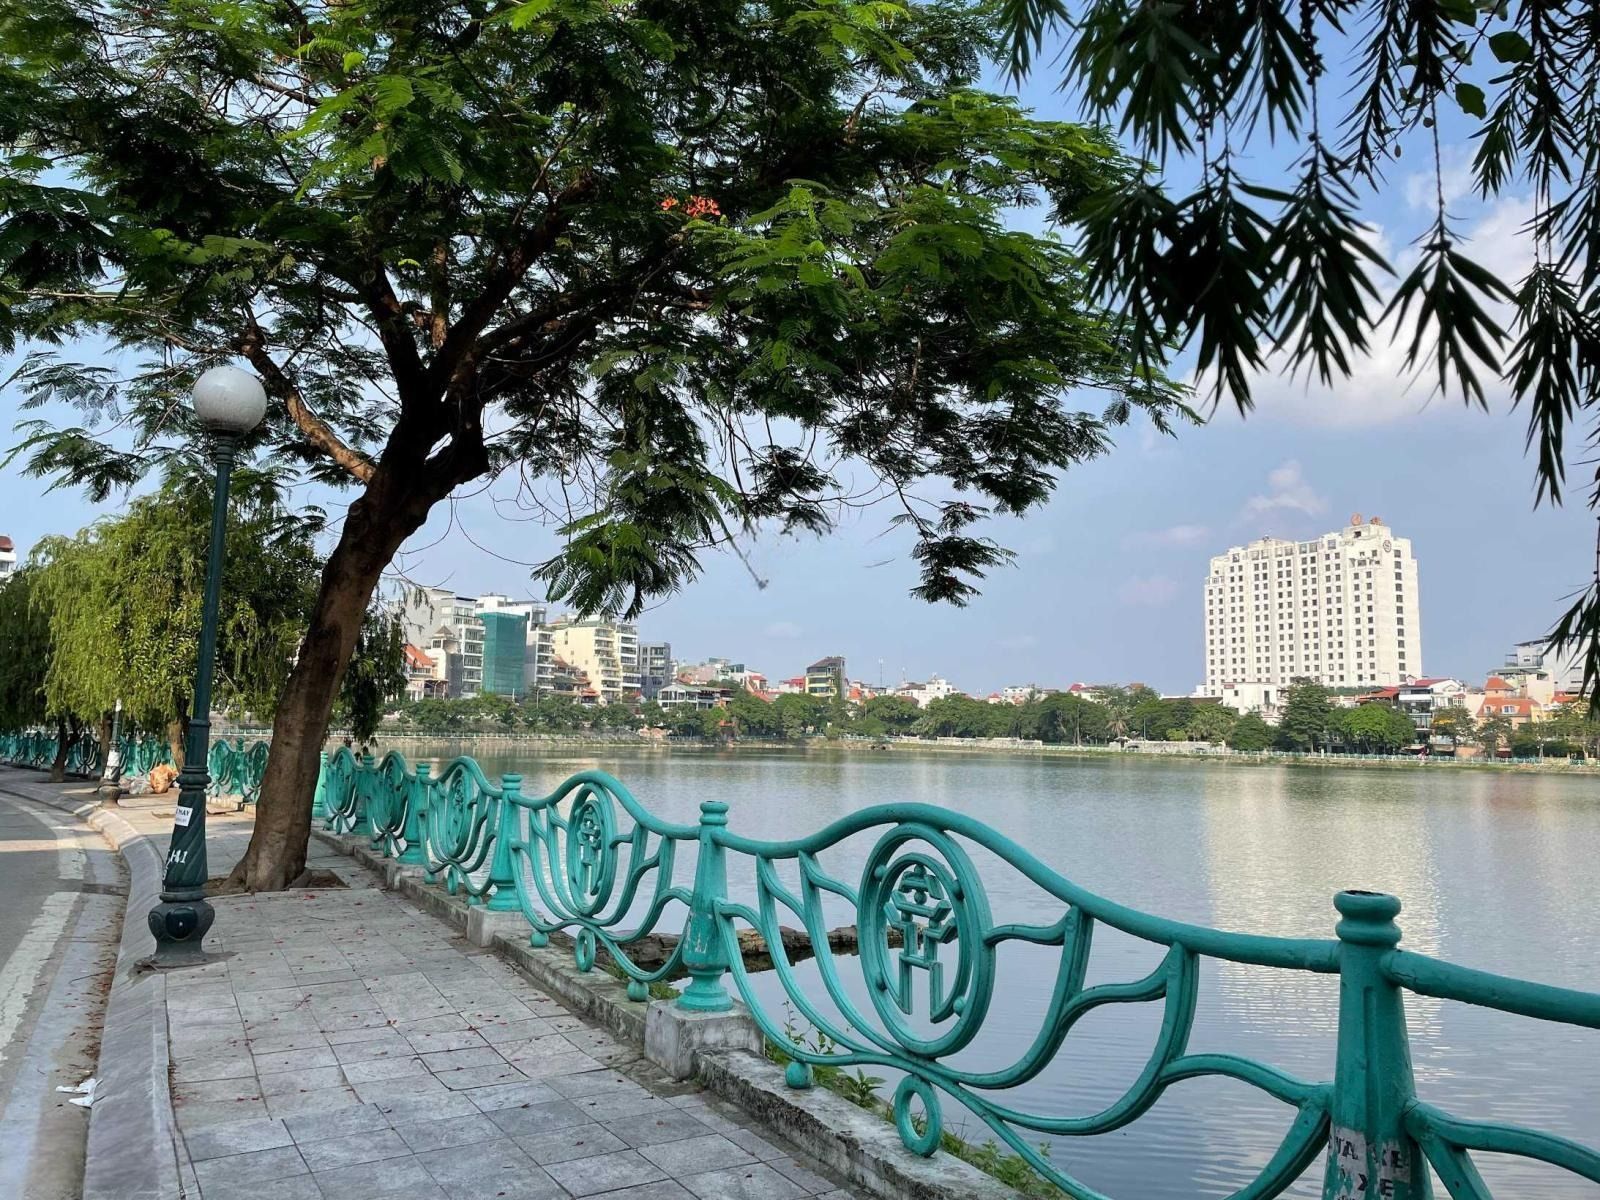 Giá bán nhà riêng, nguyên căn đường Quảng An, quận Tây Hồ hiện tại là bao nhiêu?